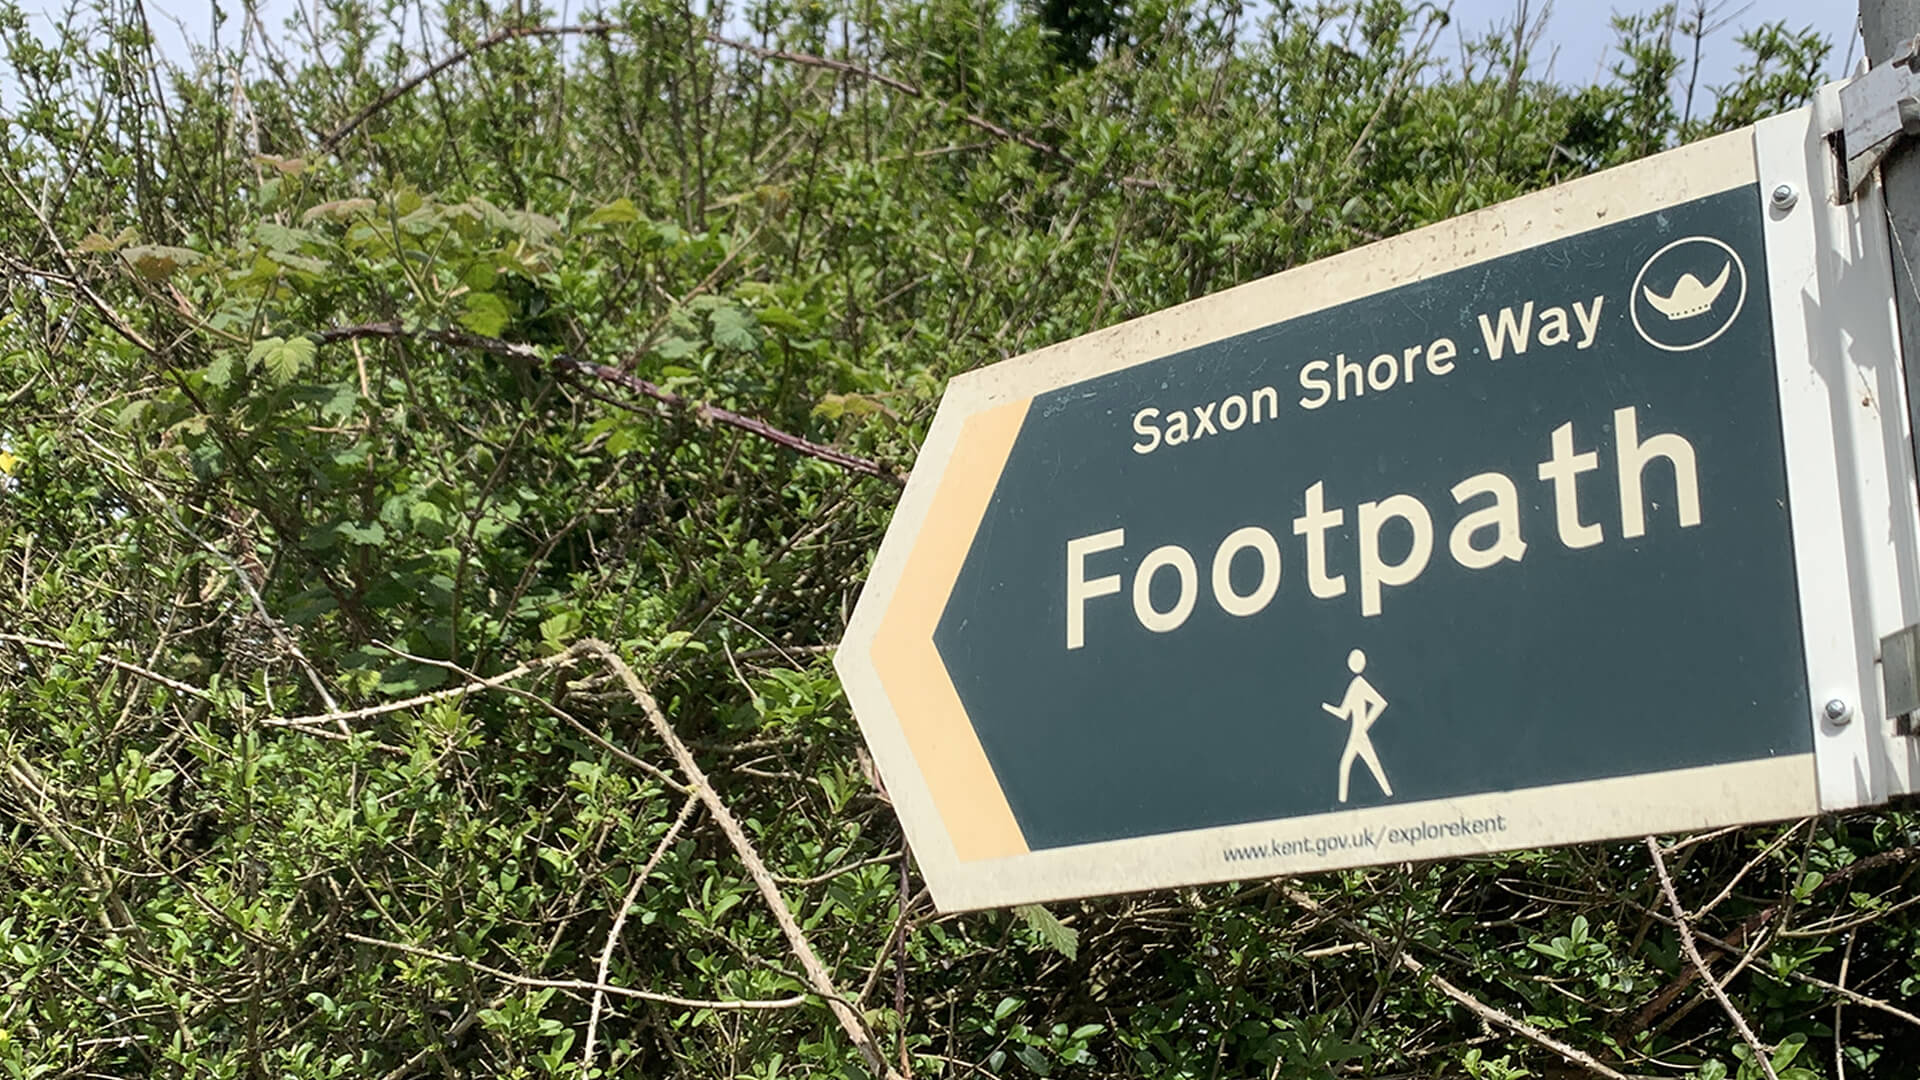 Callum Park Saxon Shore Way